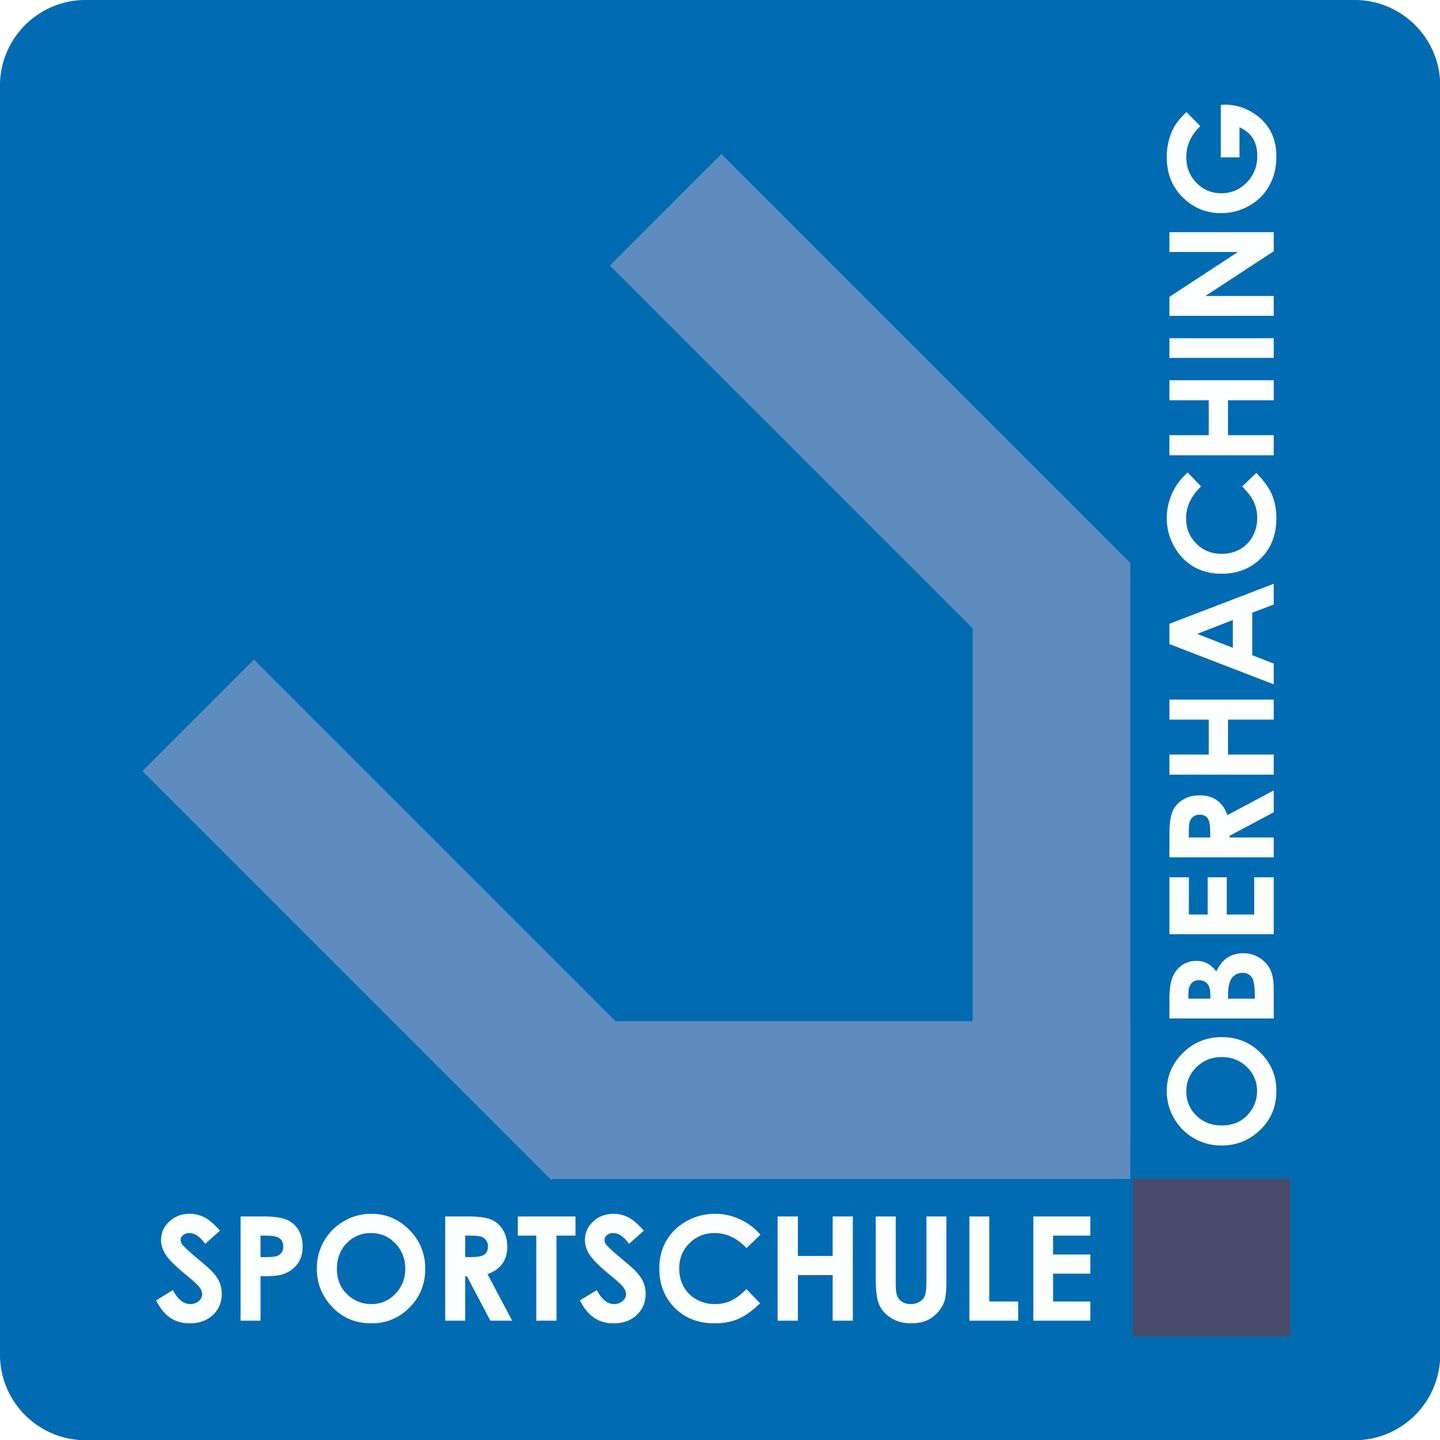 sportschule oberhachinglogo